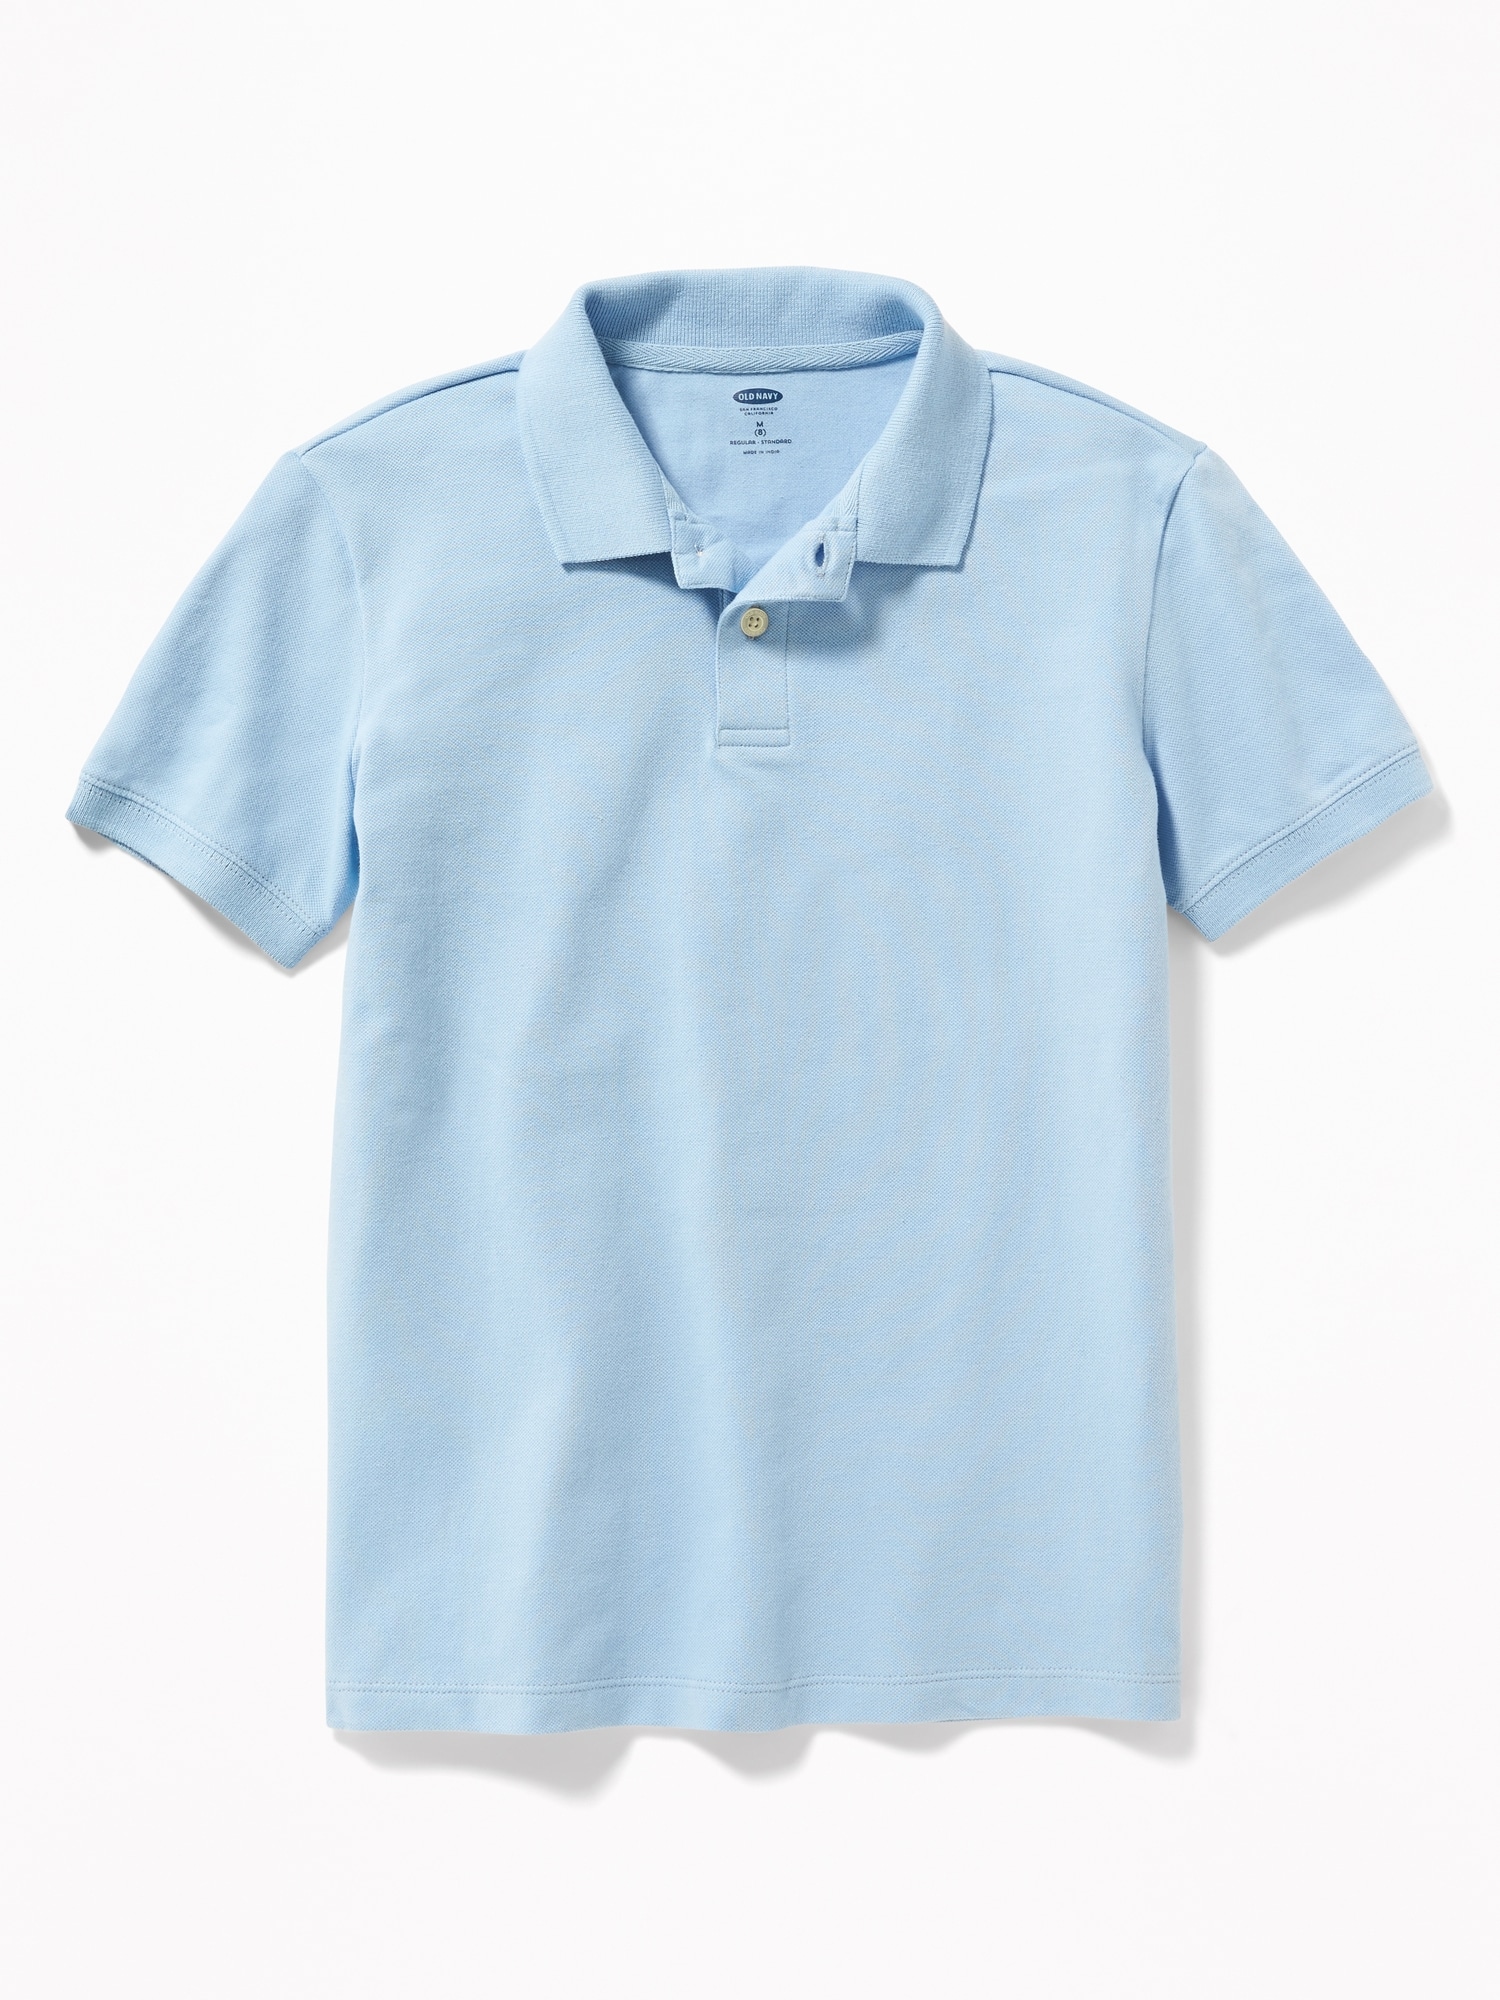 Old Navy School Uniform Pique Polo Shirt for Boys blue. 1